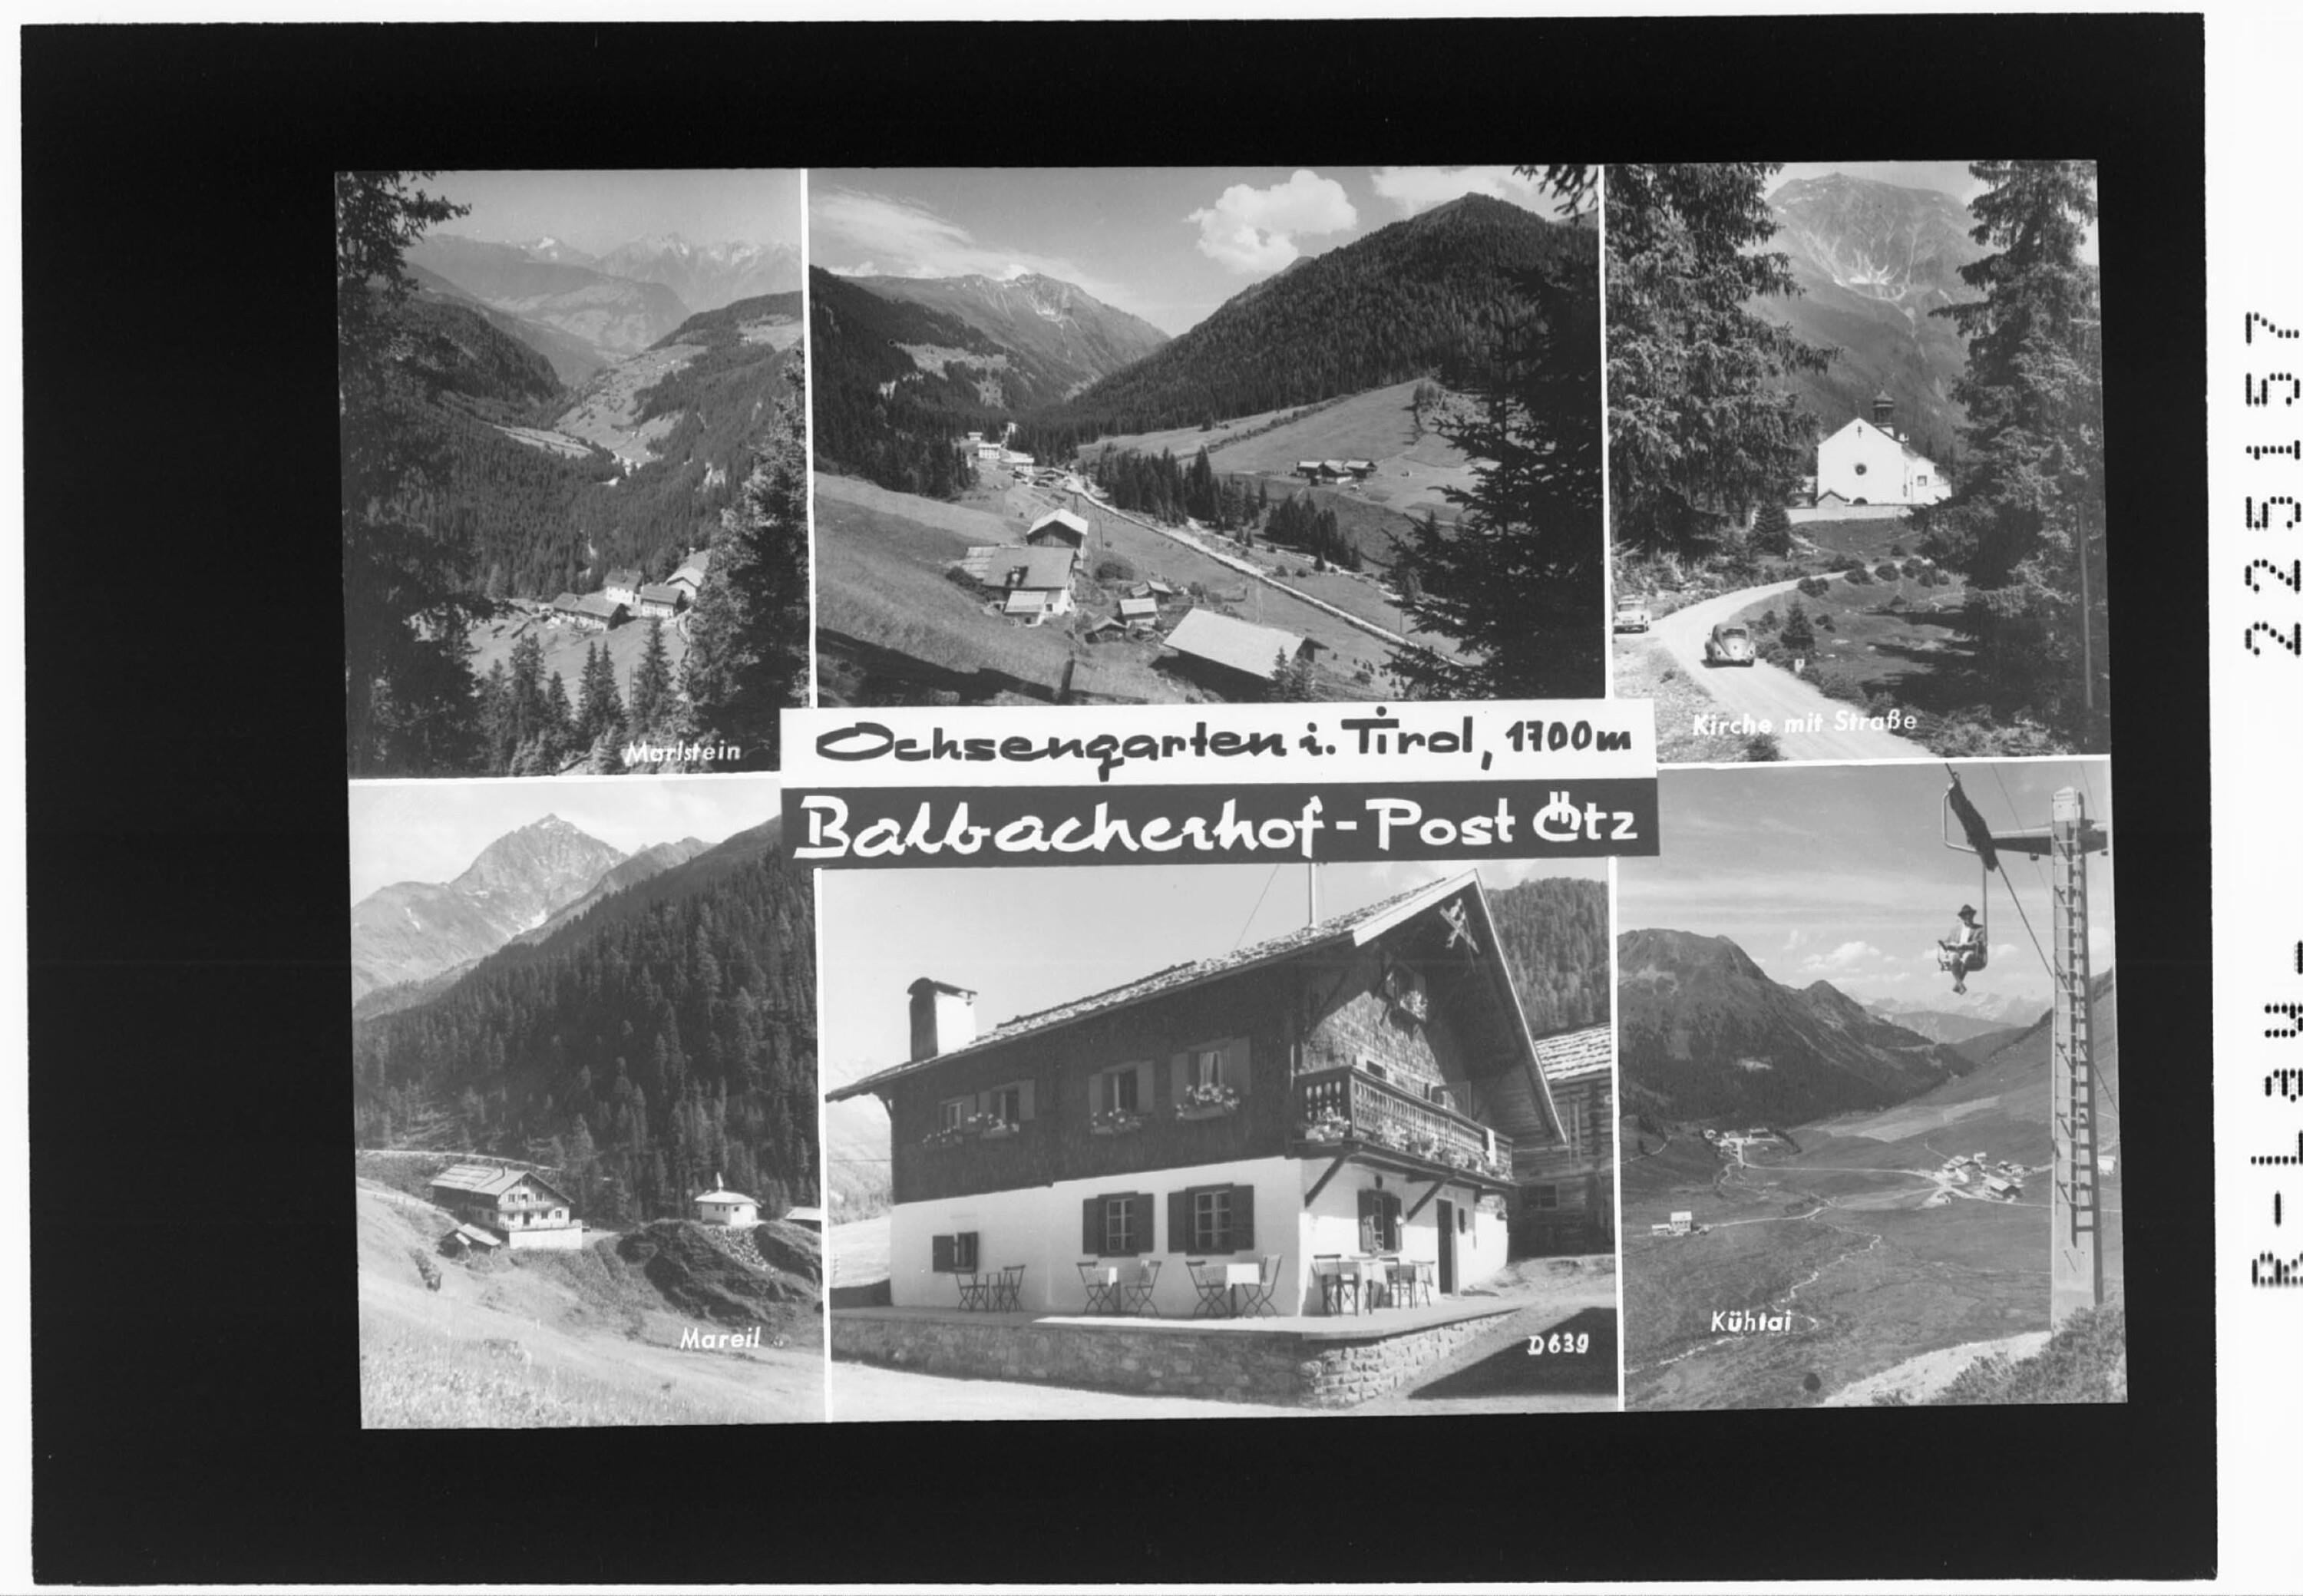 Ochsengarten in Tirol 1700 m / Balbacherhof - Post Ötz></div>


    <hr>
    <div class=